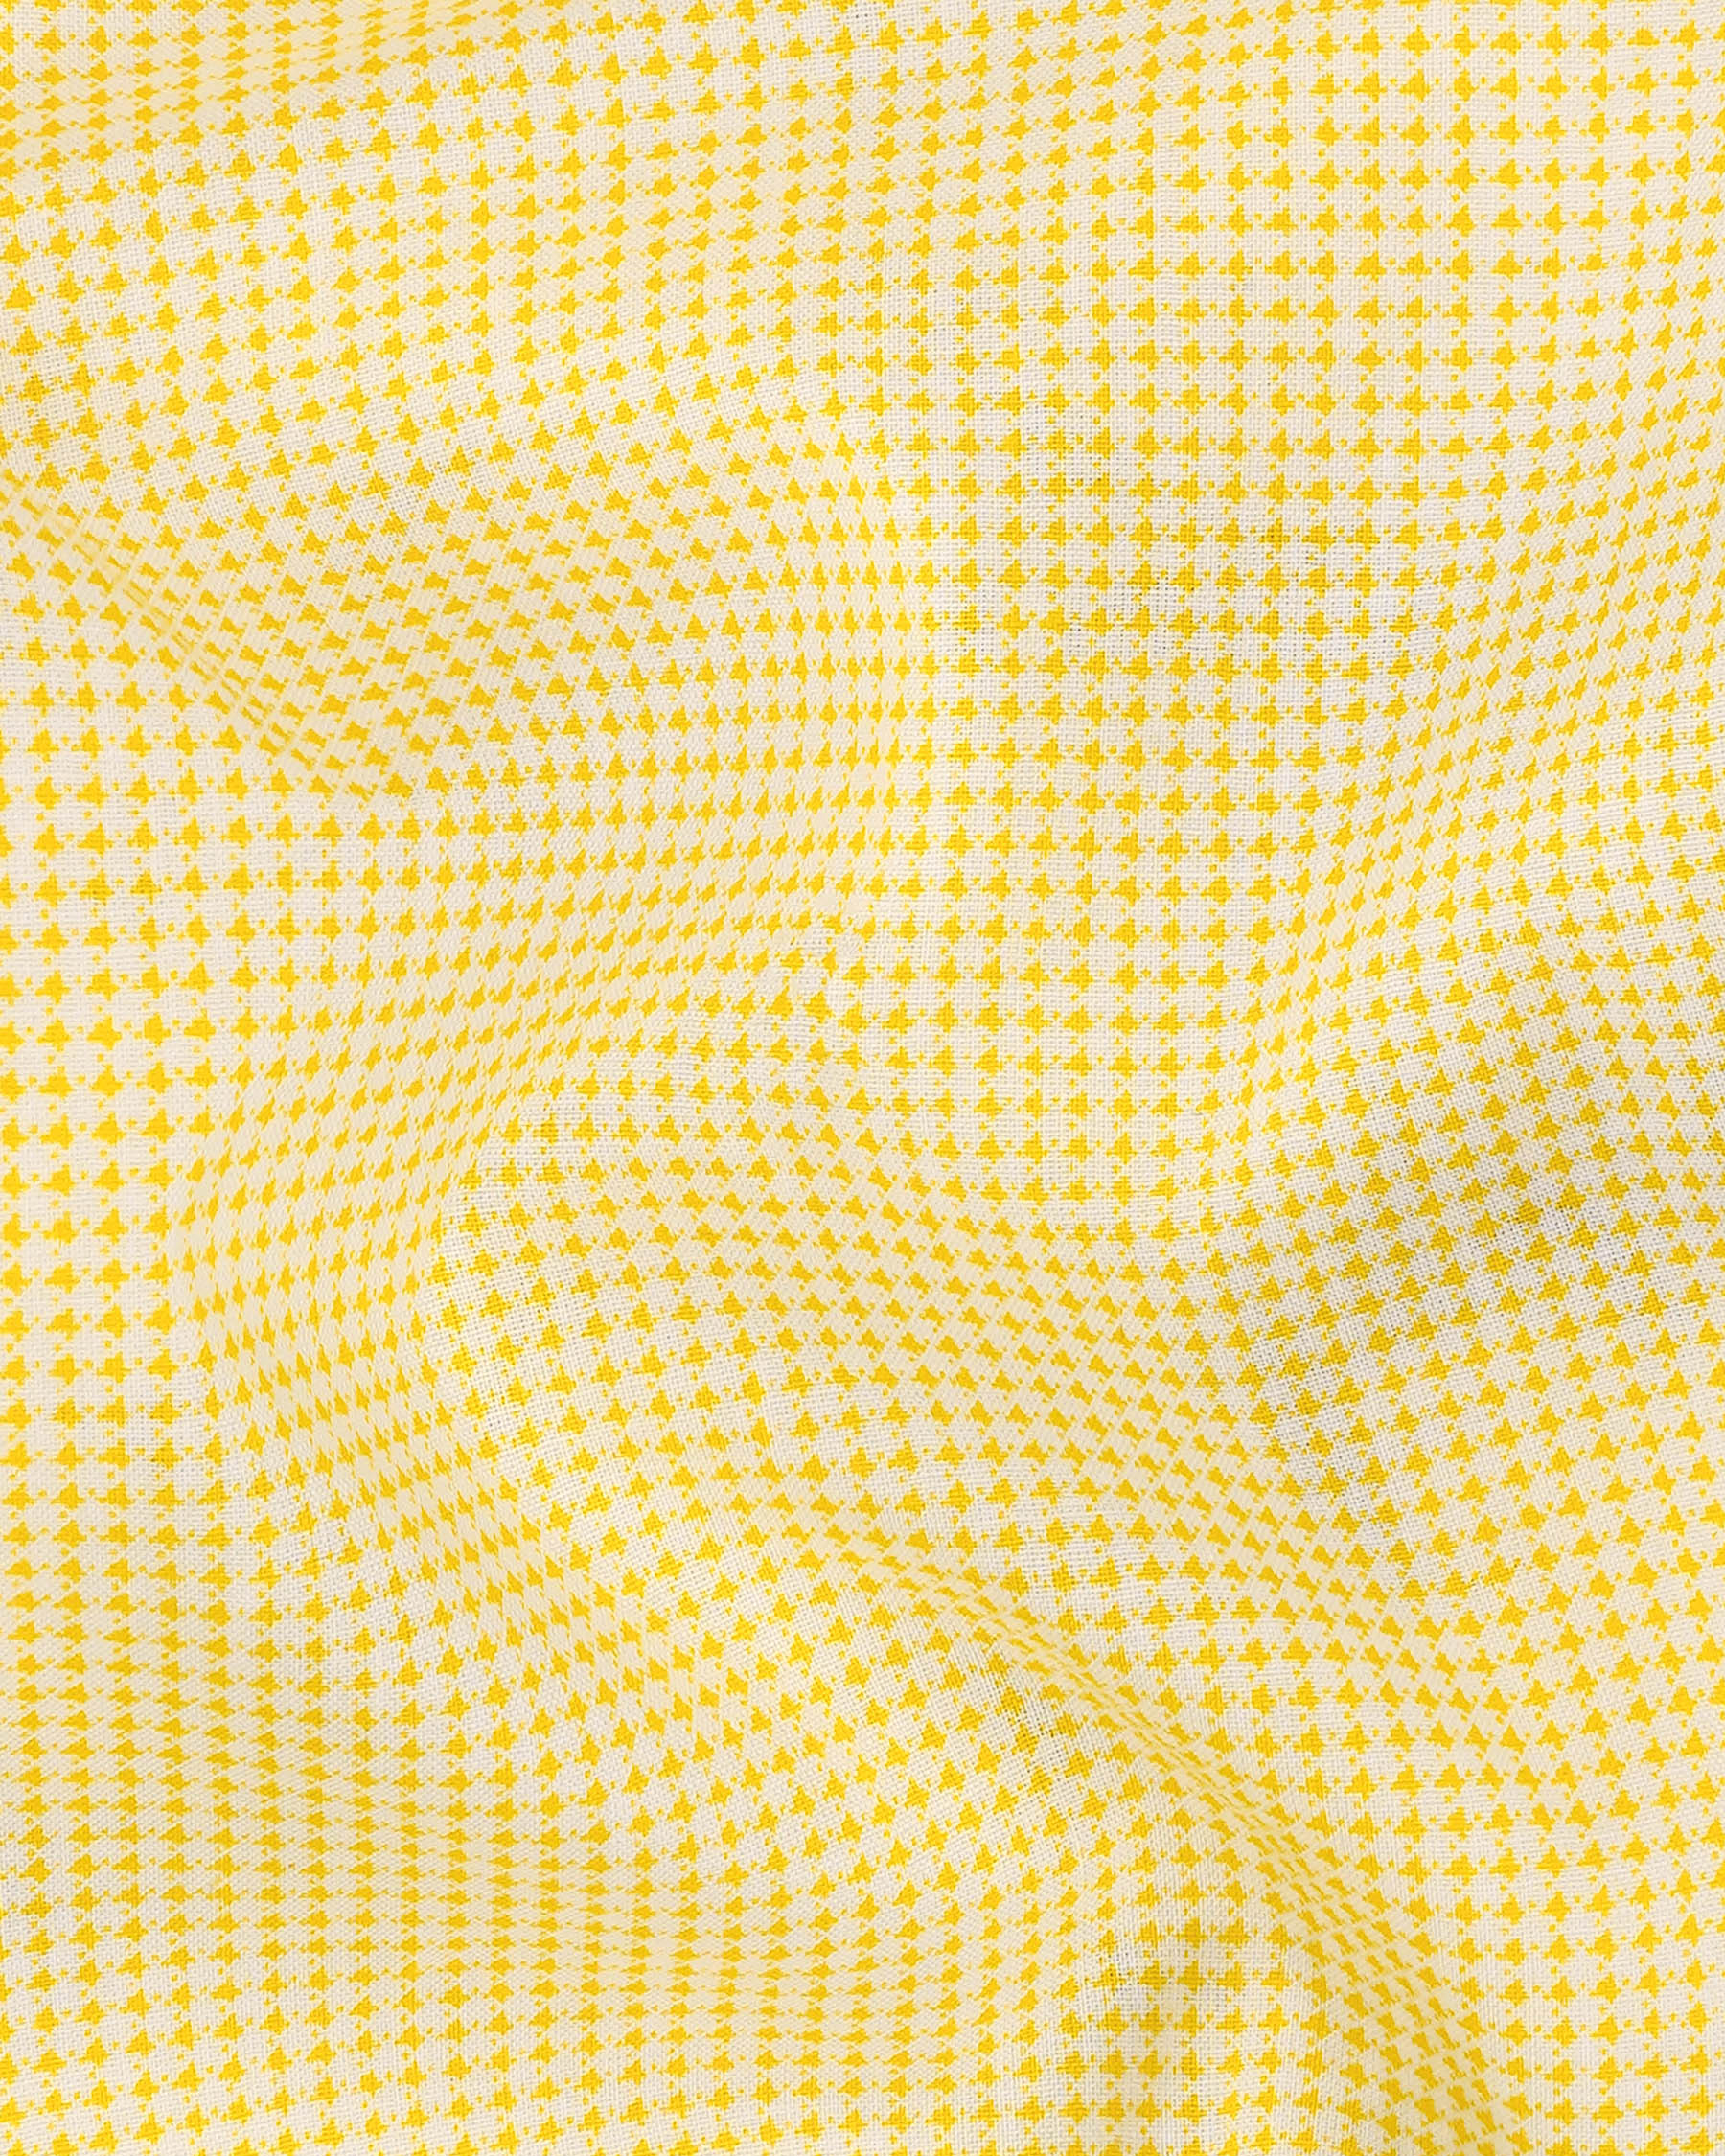 Dandelion Yellow and Bright White Mini Checkered Premium Cotton Shirt 7980-M-38, 7980-M-H-38, 7980-M-39, 7980-M-H-39, 7980-M-40, 7980-M-H-40, 7980-M-42, 7980-M-H-42, 7980-M-44, 7980-M-H-44, 7980-M-46, 7980-M-H-46, 7980-M-48, 7980-M-H-48, 7980-M-50, 7980-M-H-50, 7980-M-52, 7980-M-H-52